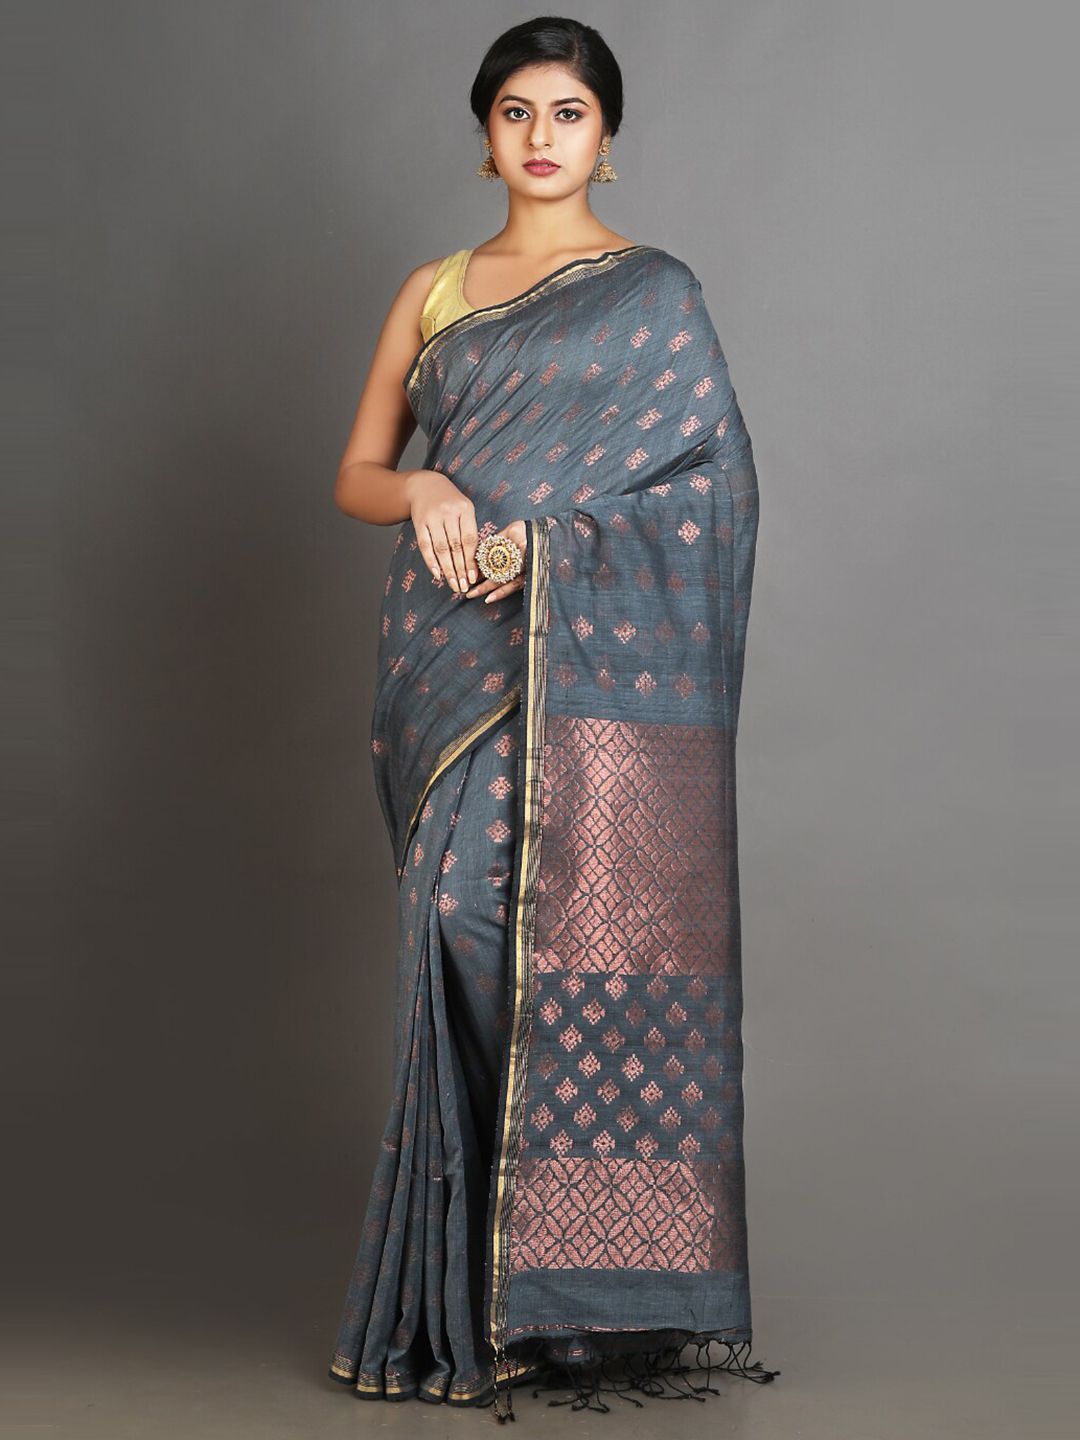 Charukriti Grey & Copper-Toned Woven Design Zari Pure Linen Saree Price in India